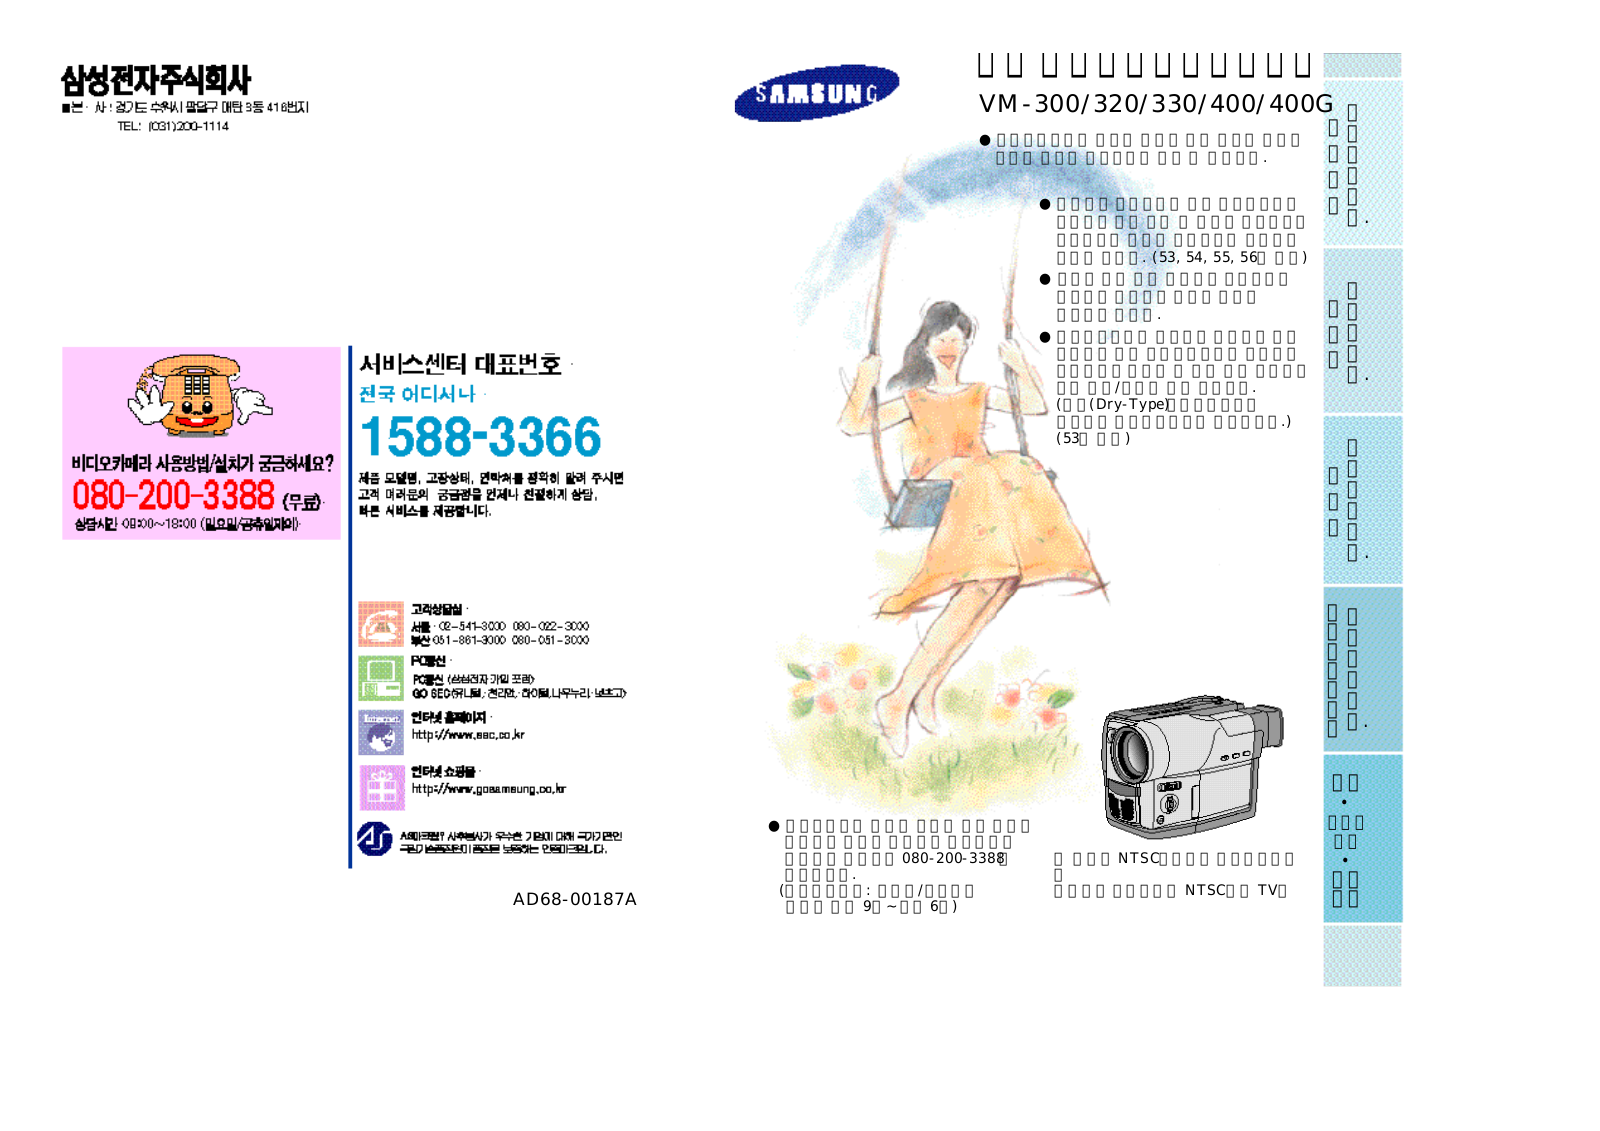 Samsung VM-300, VM-320, VM-330, VM-400 Manual